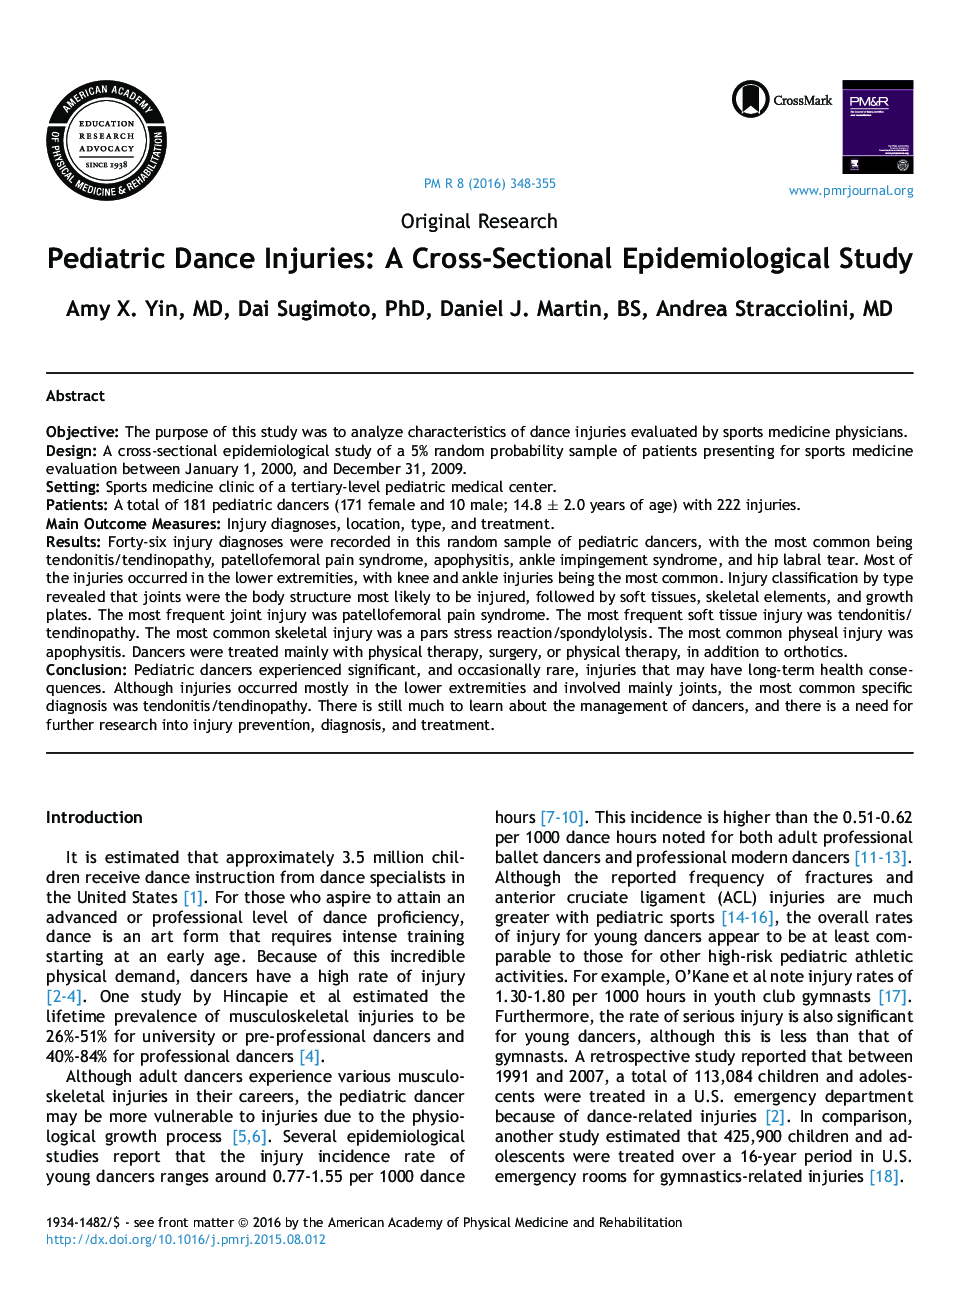 آسیب های رقص در کودکان: یک مطالعه اپیدمیولوژیک متقاطع